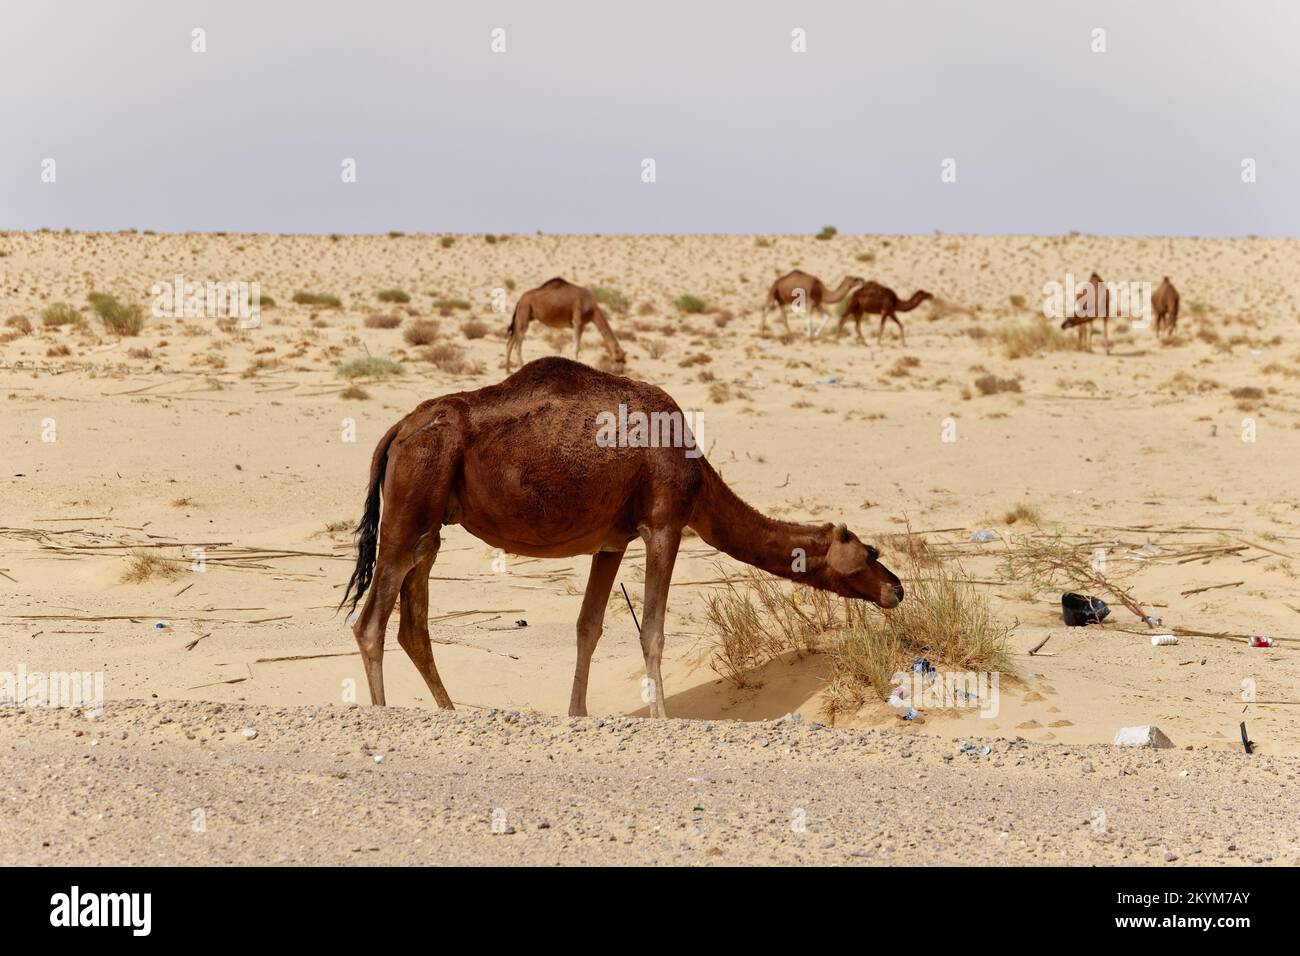 Kamele in der Wüste essen Blätter vom Baum. Wilde Tiere in ihrem natürlichen Lebensraum. Wildnis und trockene Landschaften. Reisen und Tourismus. Stockfoto